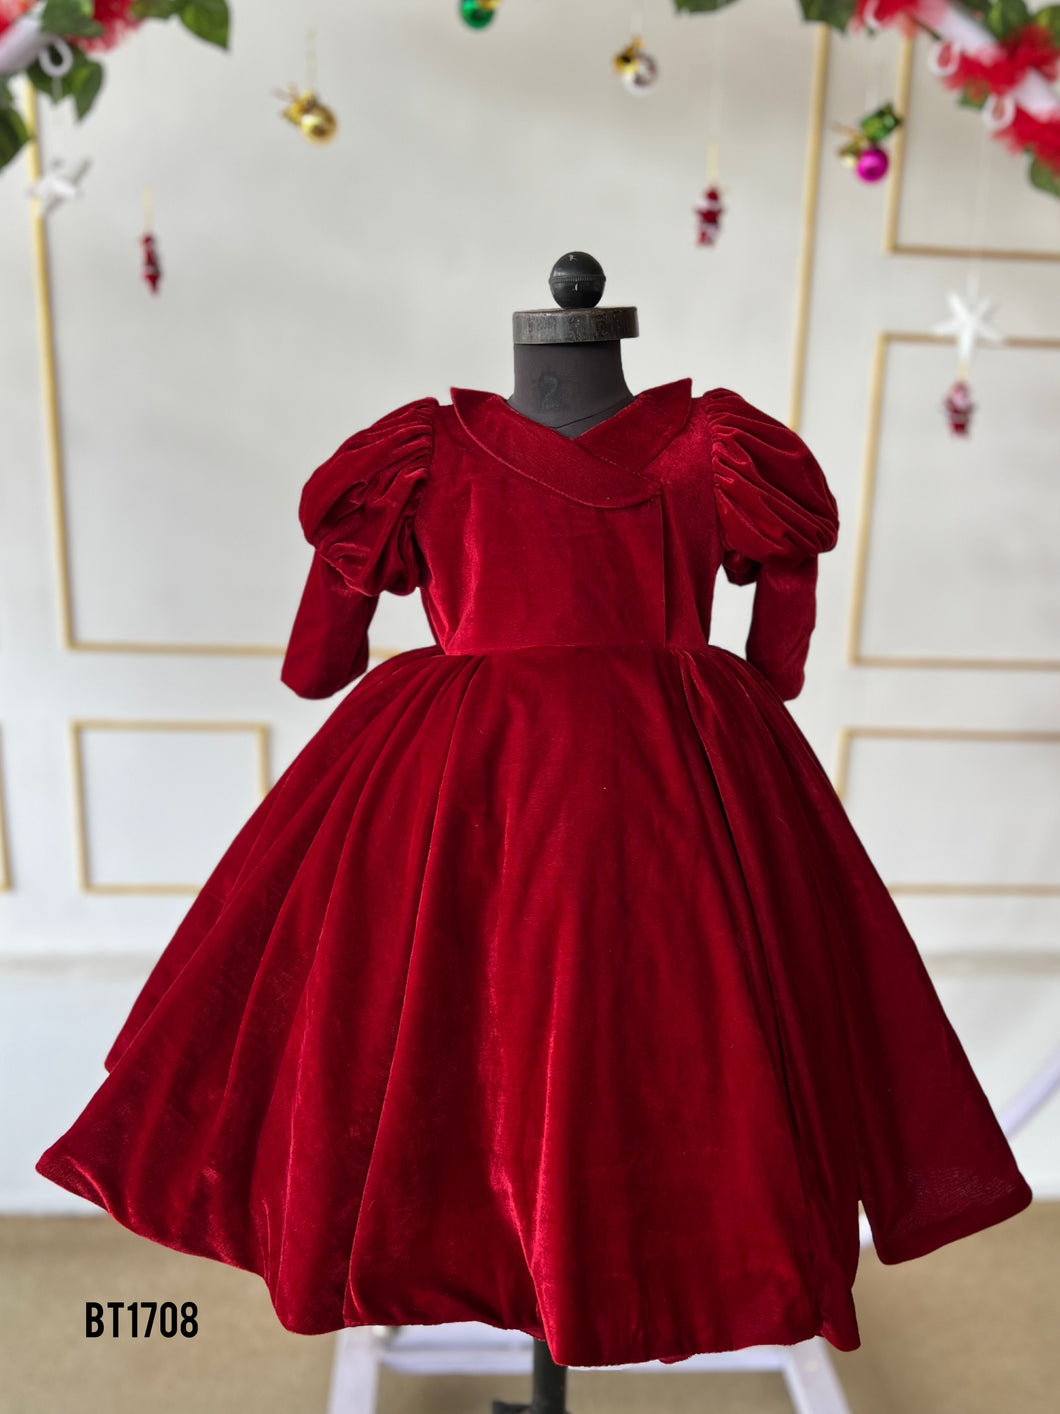 BT1708 Crimson Joy Dress - Winter's Velvet Embrace